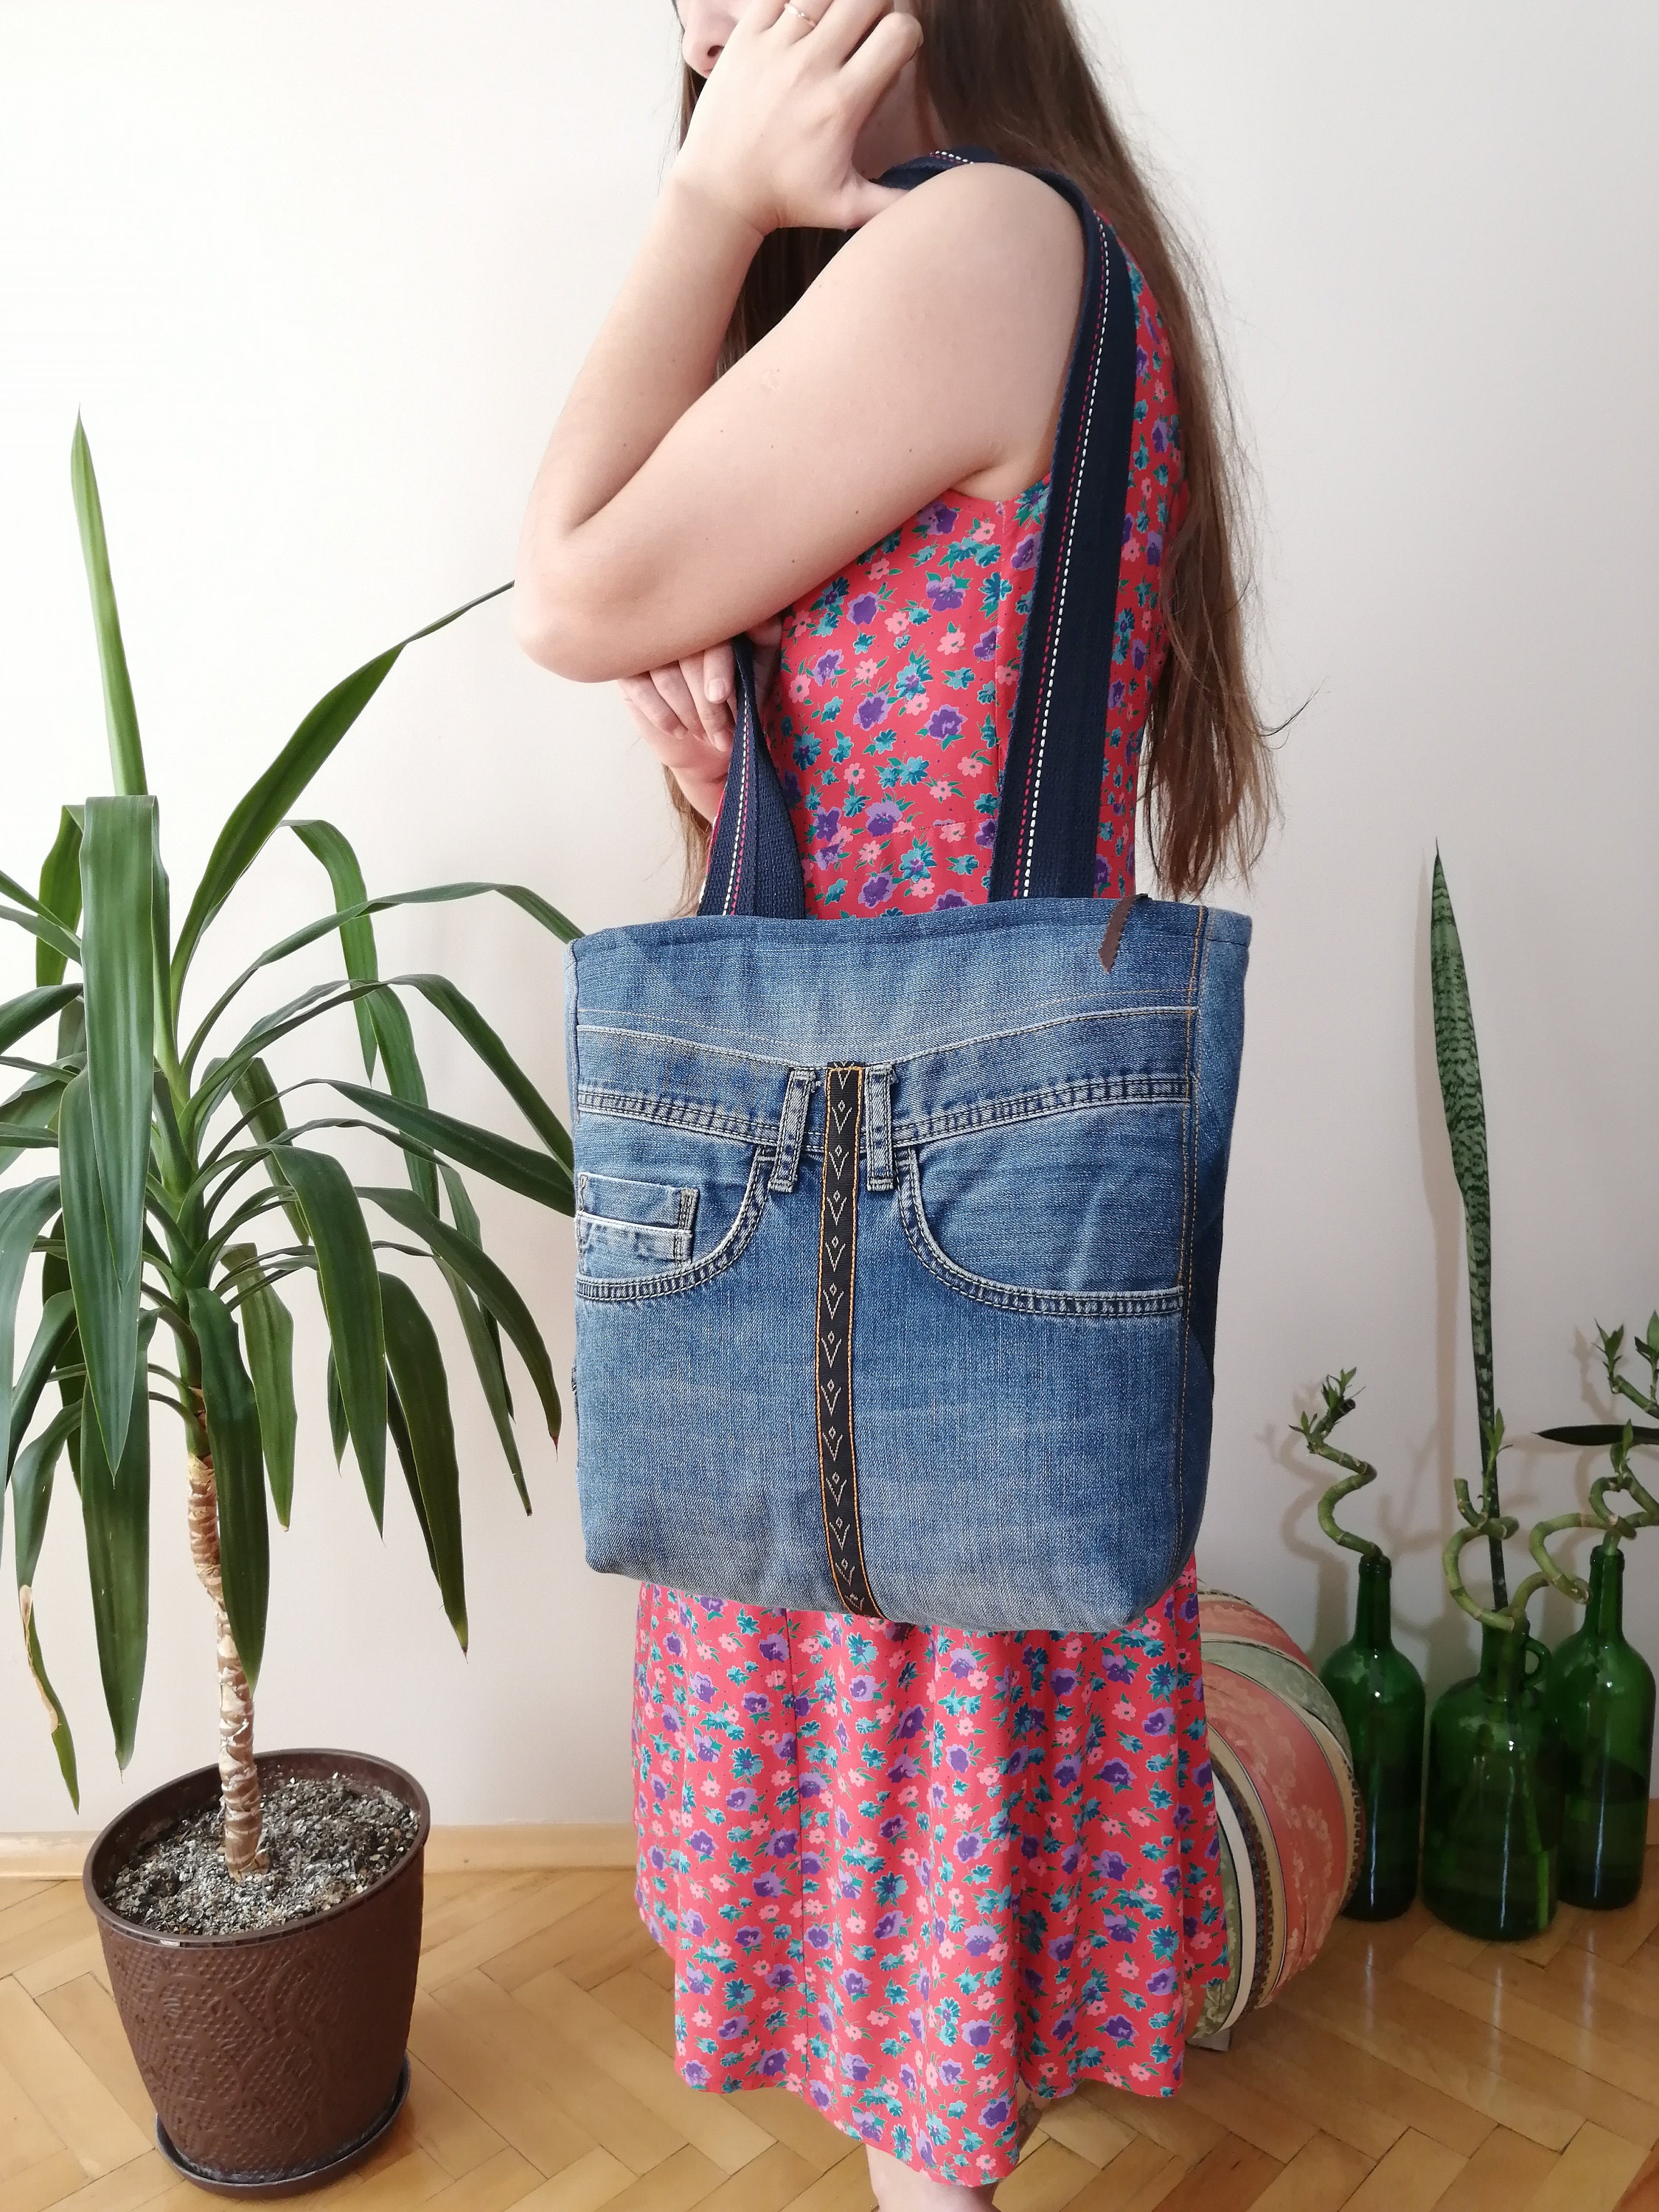 Crazy Recycled Bag Zipped Tote Bag Denim Handbag Everyday - Etsy